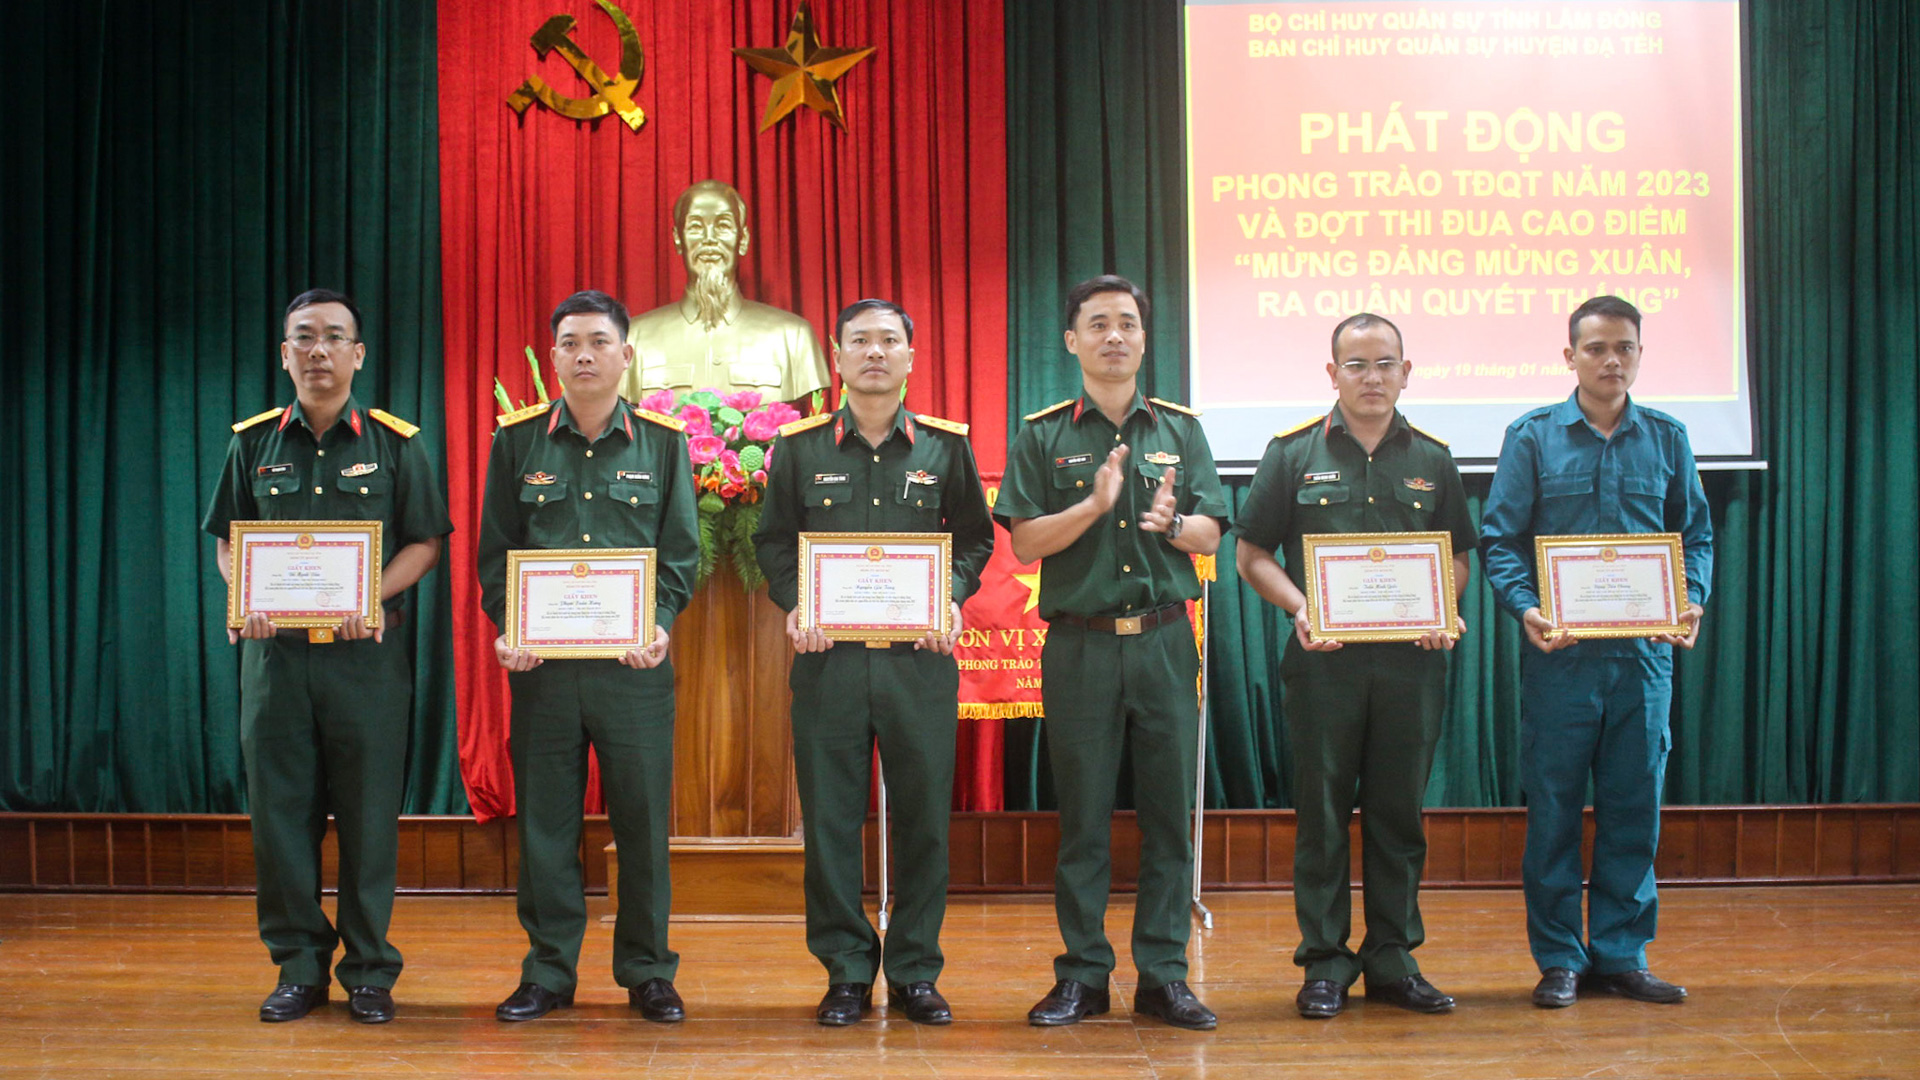 Cán bộ, chiến sĩ Ban CHQS huyện Đạ Tẻh tham gia sôi nổi các phong trào
và đạt được nhiều thành tích